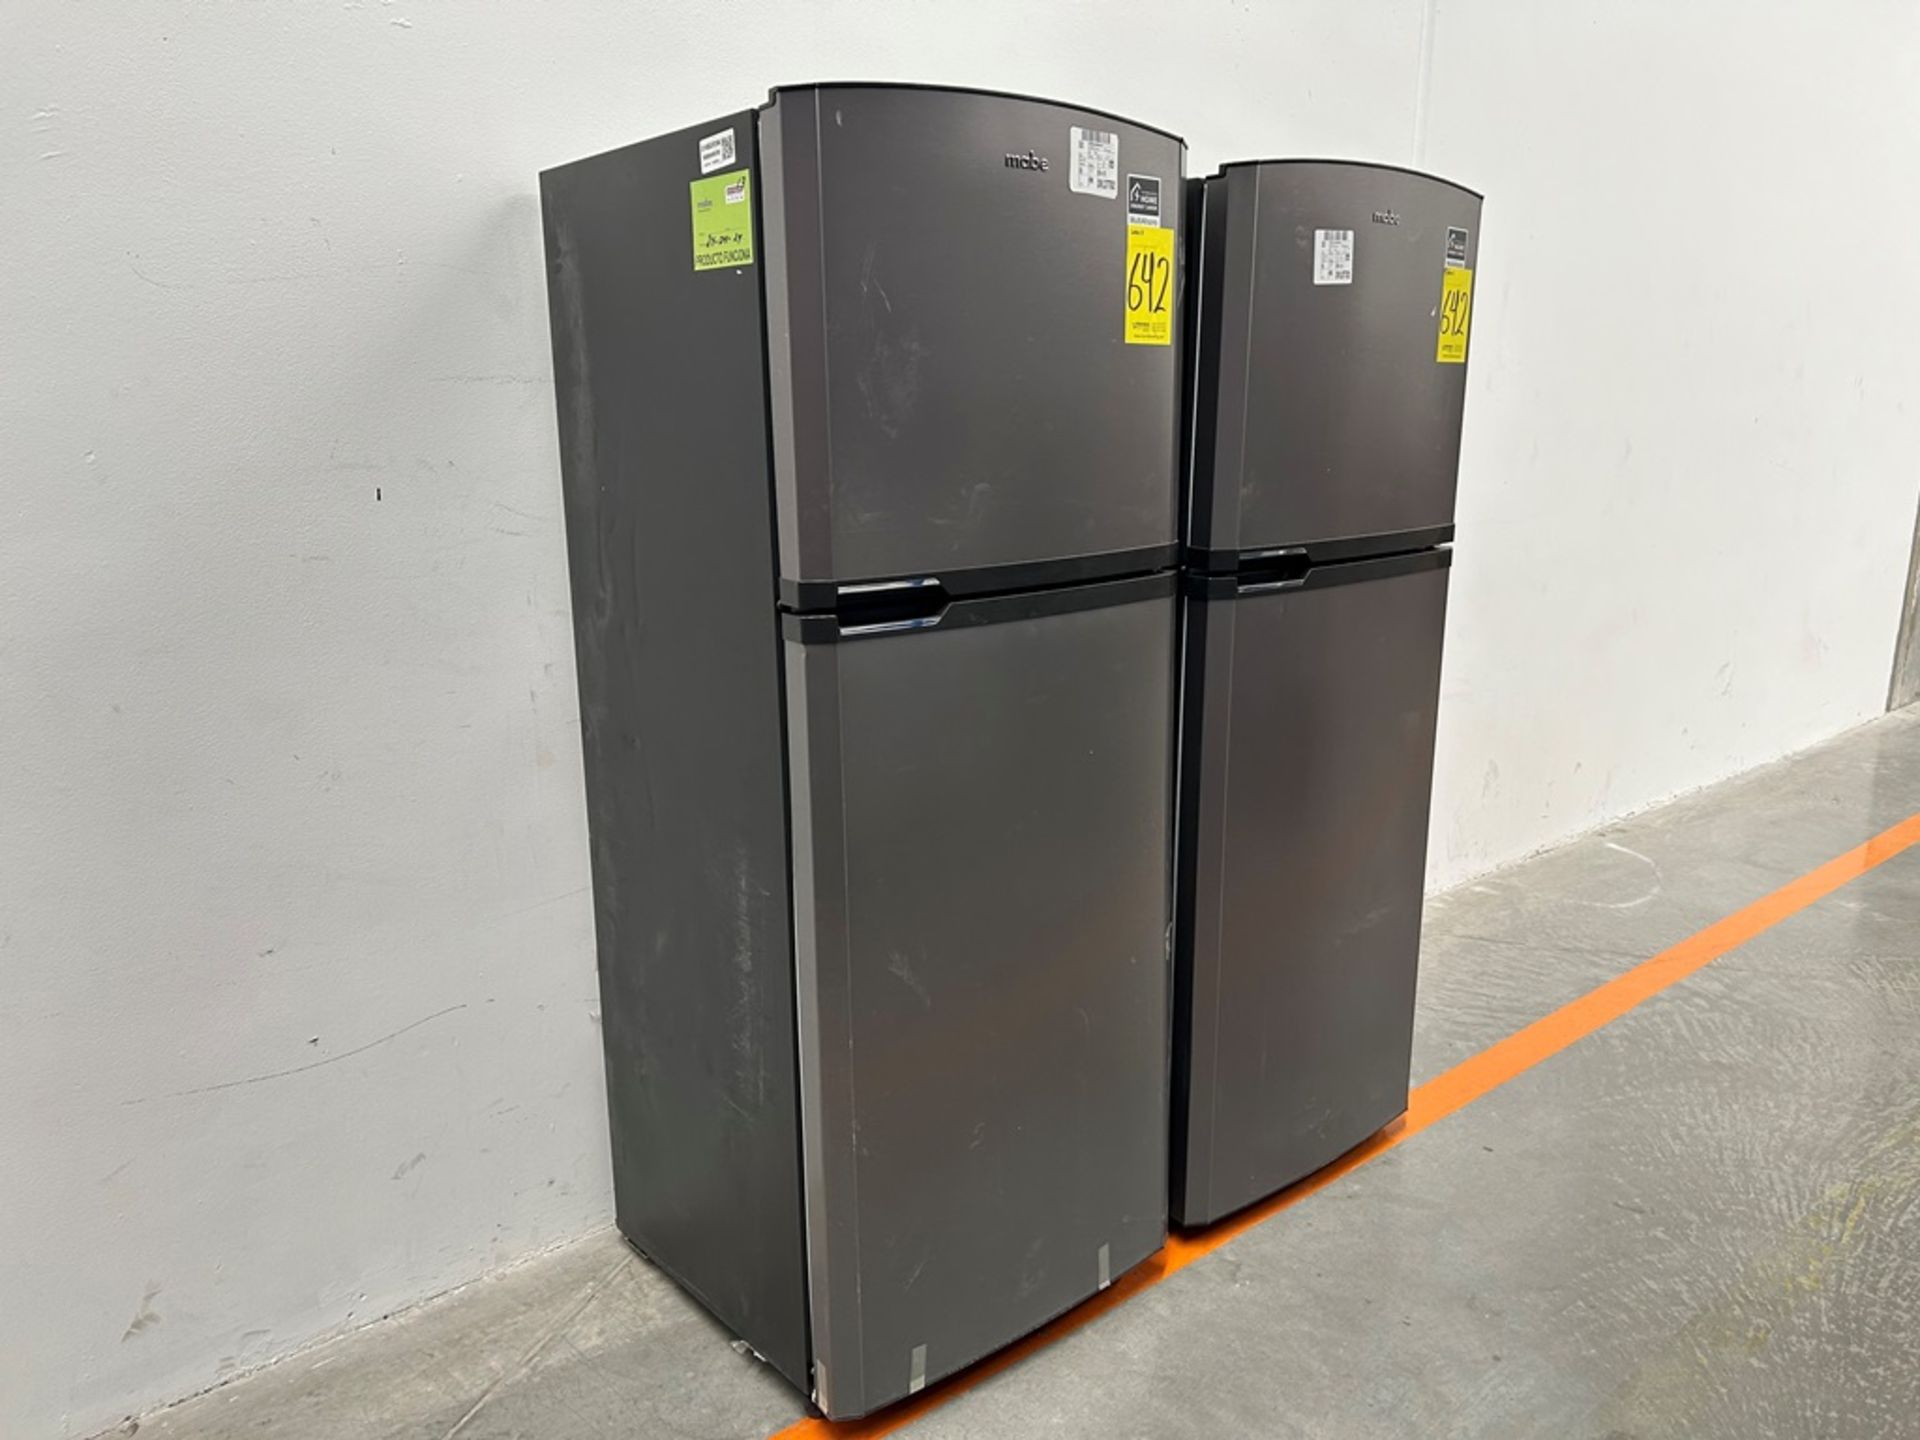 Lote de 2 refrigeradores contiene: 1 refrigerador Marca MABE, Modelo RME360PVMRM, Serie 01988, Colo - Image 3 of 18